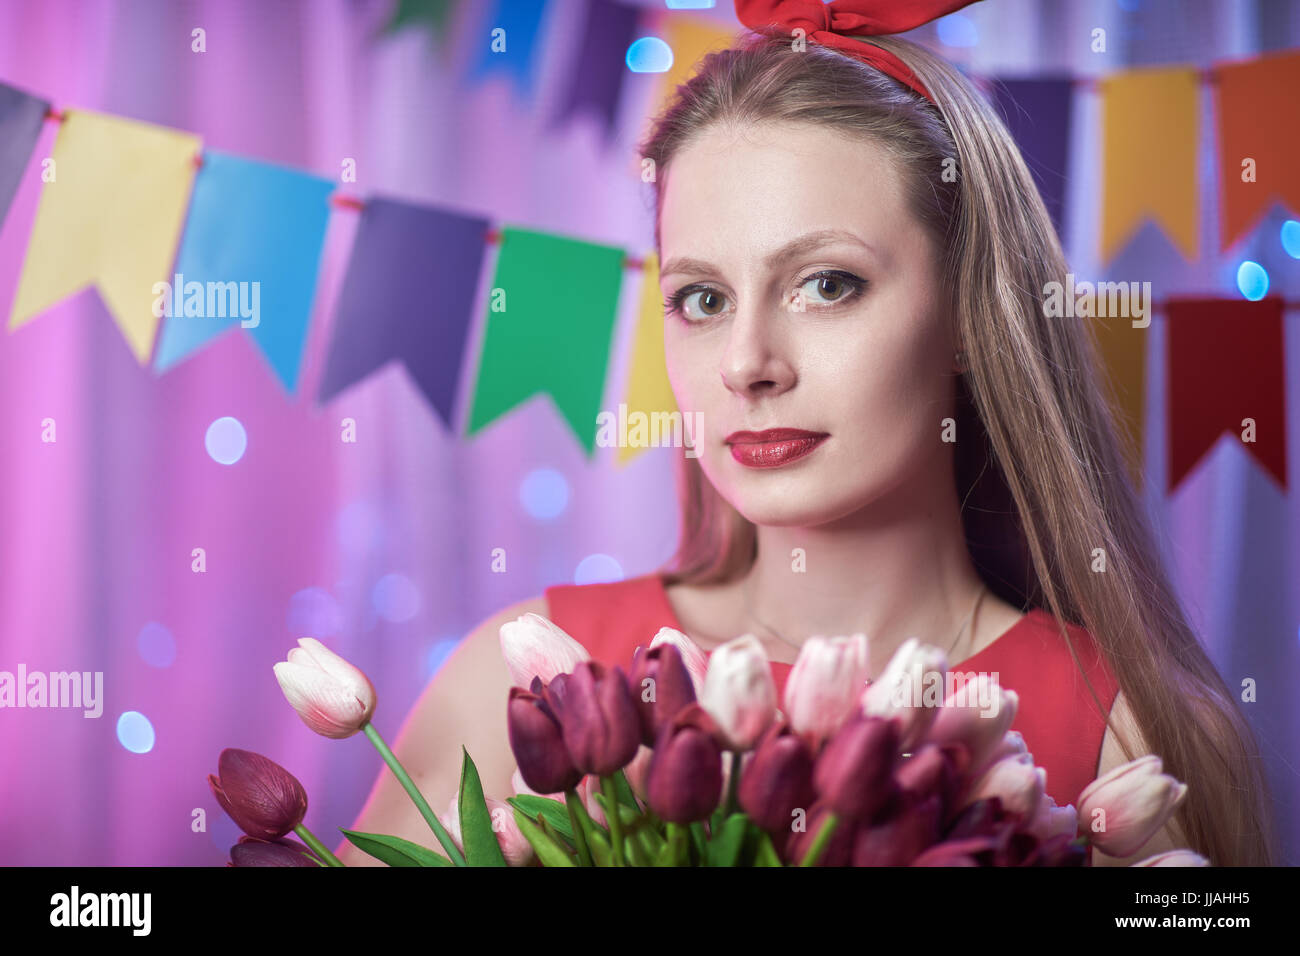 Il concetto: la celebrazione di compleanno. bella giovane vintage lo stile pin up girl in piedi in una colorata illumina la scena tenendo i fiori. Foto Stock